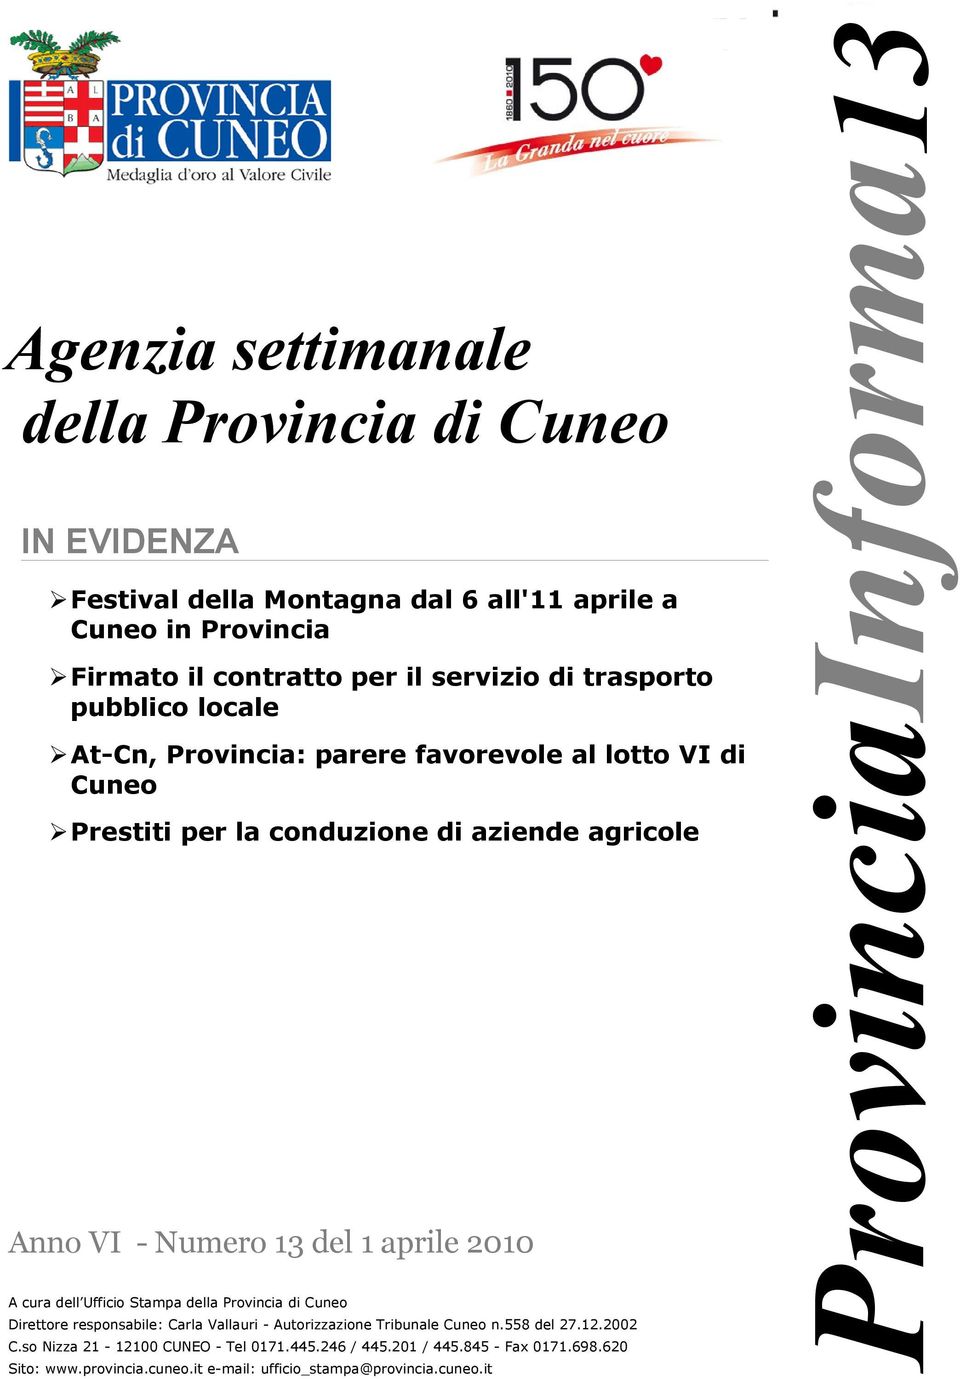 2010 A cura dell Ufficio Stampa della Provincia di Cuneo Direttore responsabile: Carla Vallauri - Autorizzazione Tribunale Cuneo n.558 del 27.12.2002 C.